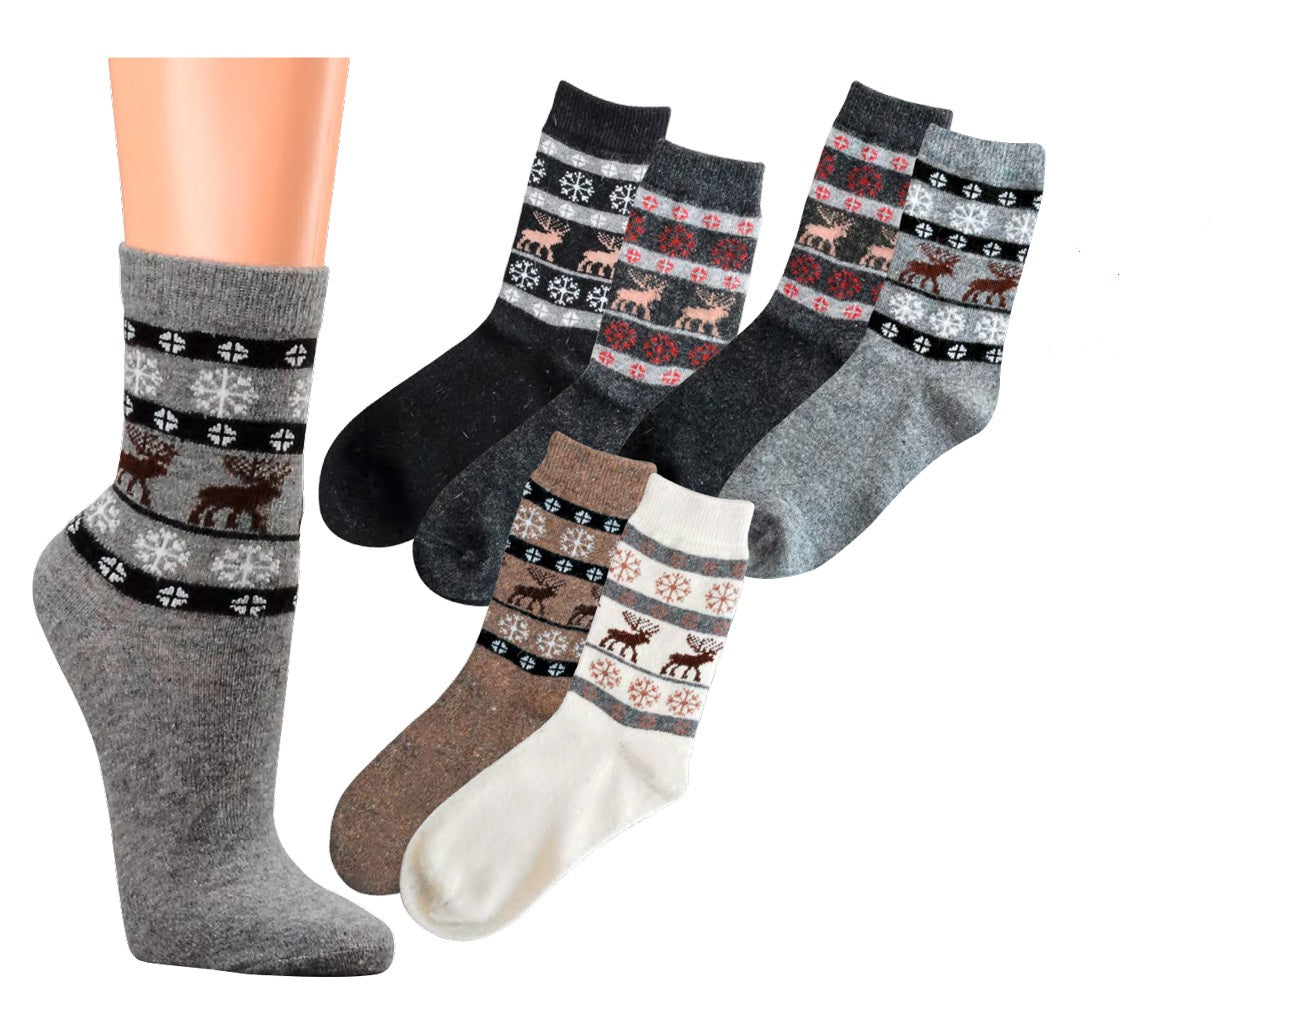 2 o 4 pares de calcetines calentitos con lana de alpaca y viscosa diseño escandinavo